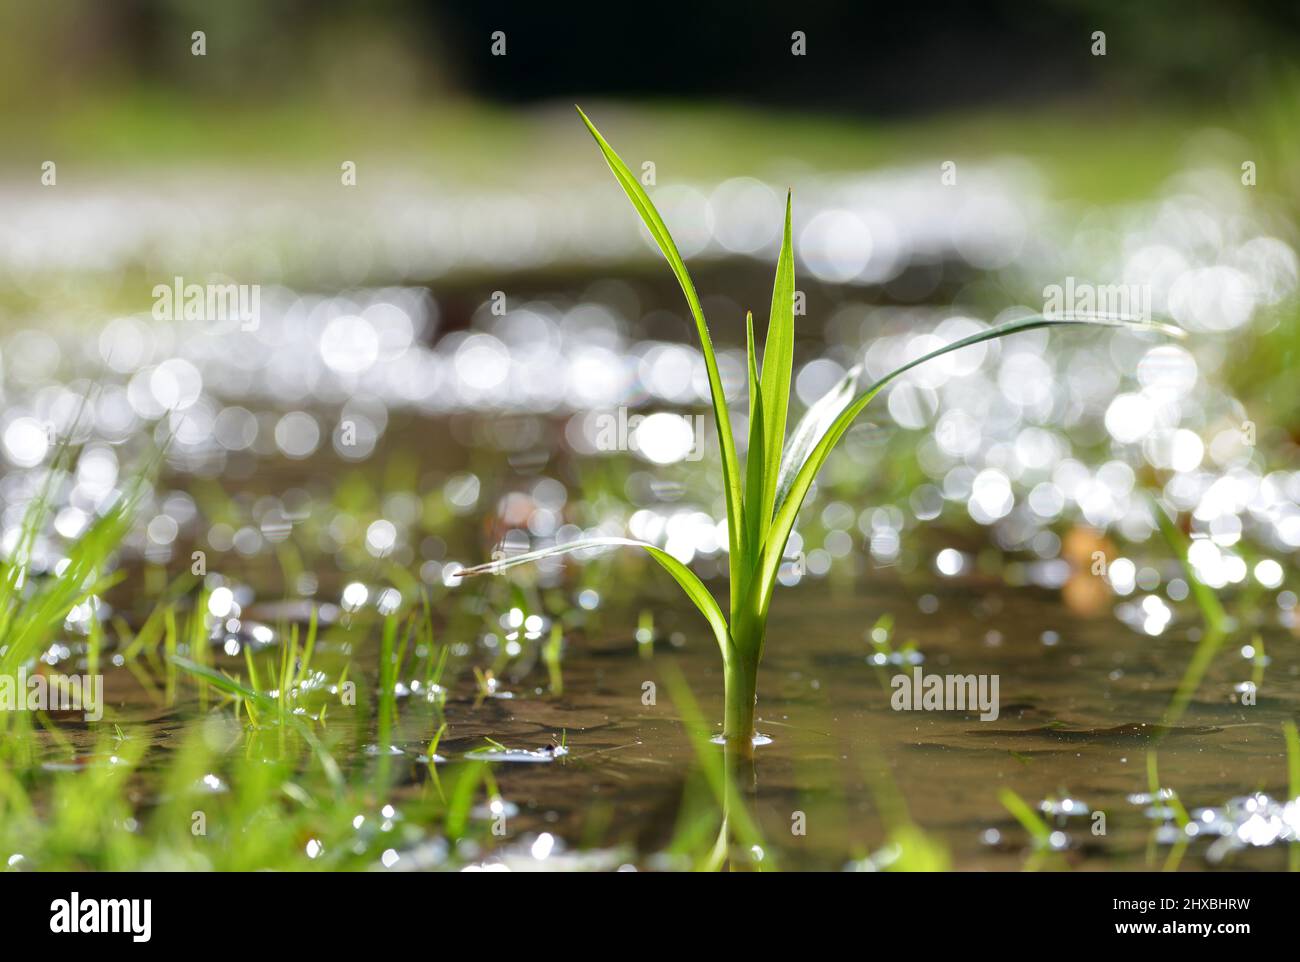 Junge Pflanze, die in einer Wasserpfütze wächst. Konzept des neuen Lebens. Stockfoto